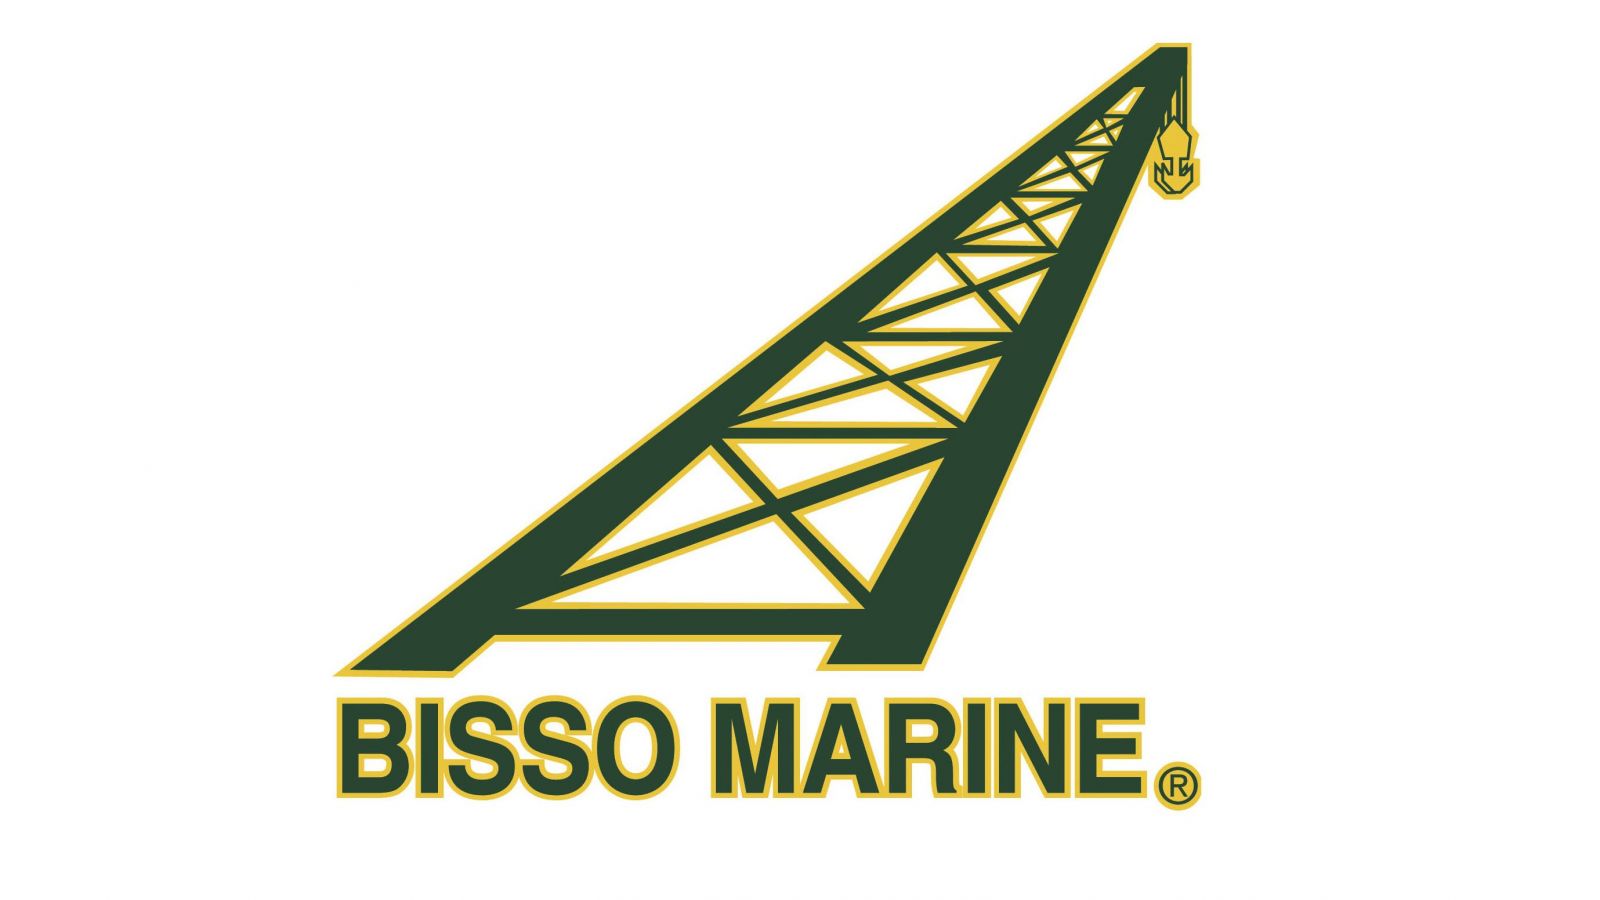 BISSO MARINE logo